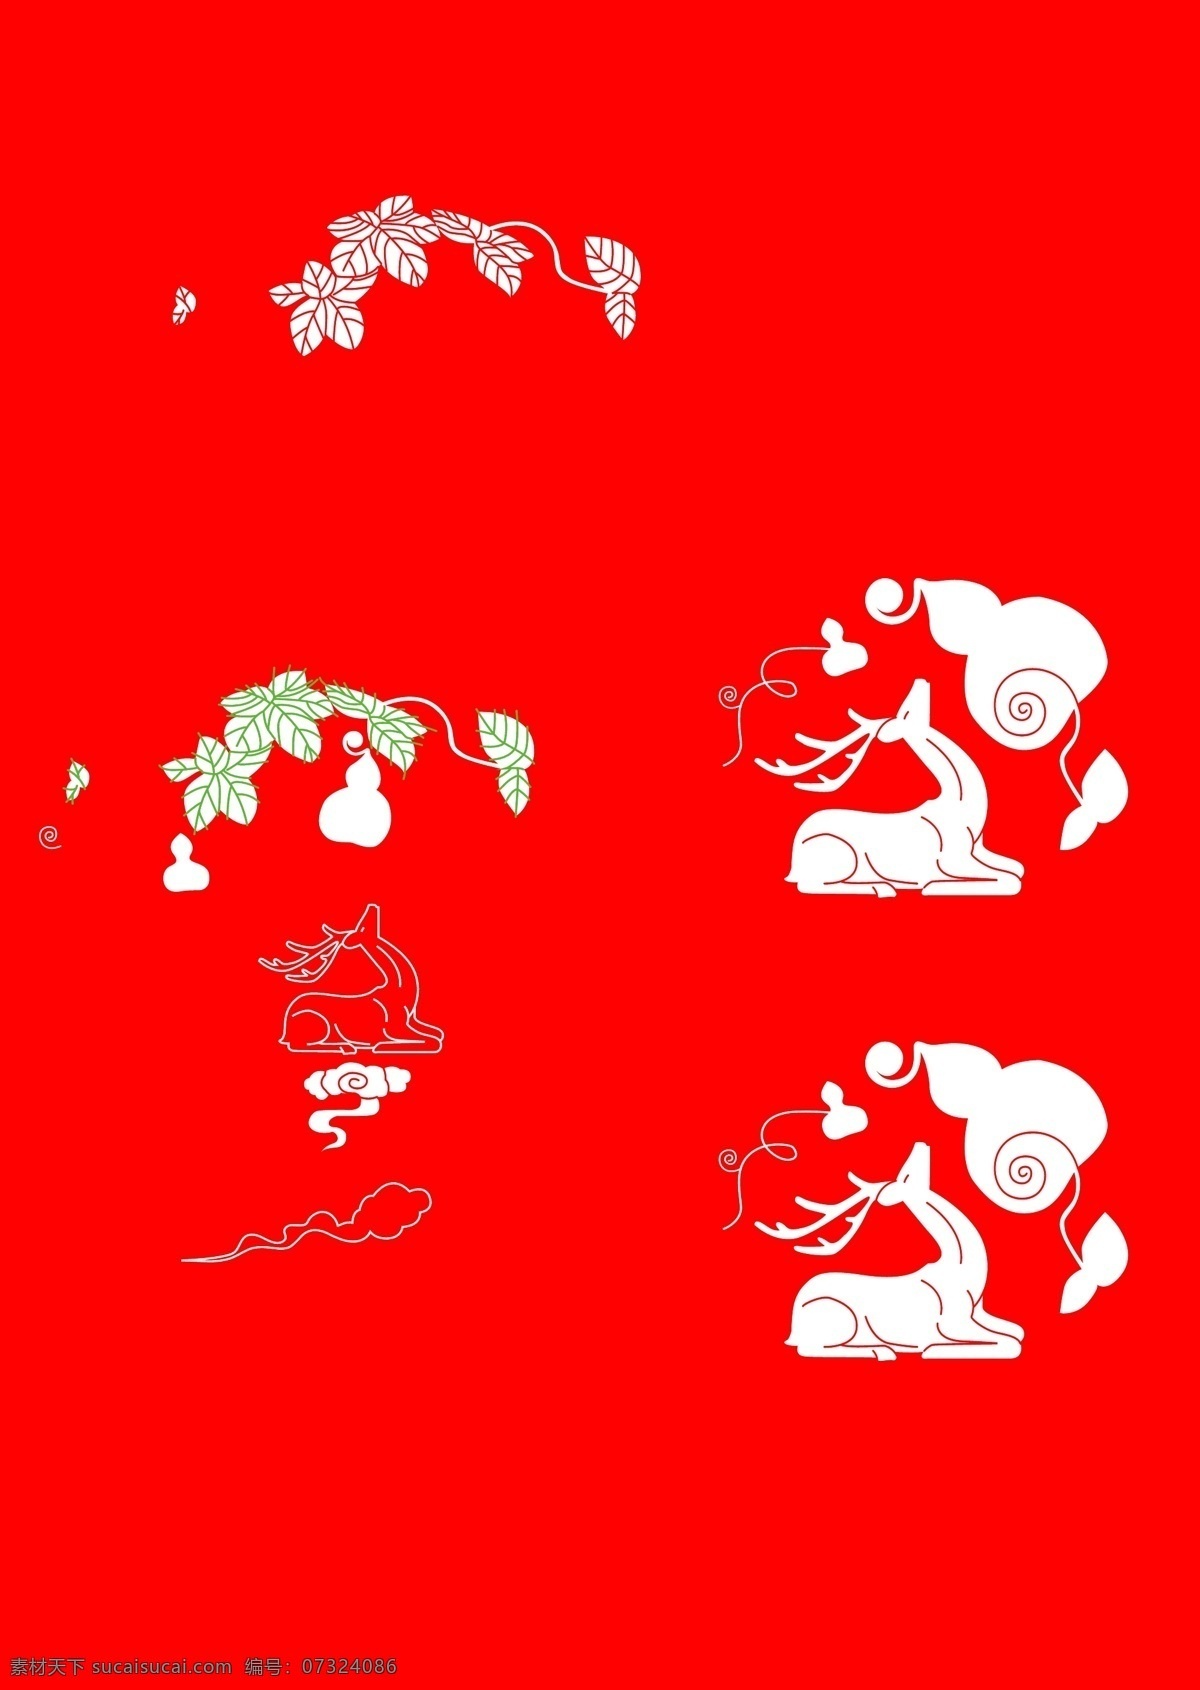 福禄寿 矢量 插画 鹿 葫芦 藤蔓 花纹 红色 可爱 生动 底纹边框 条纹线条